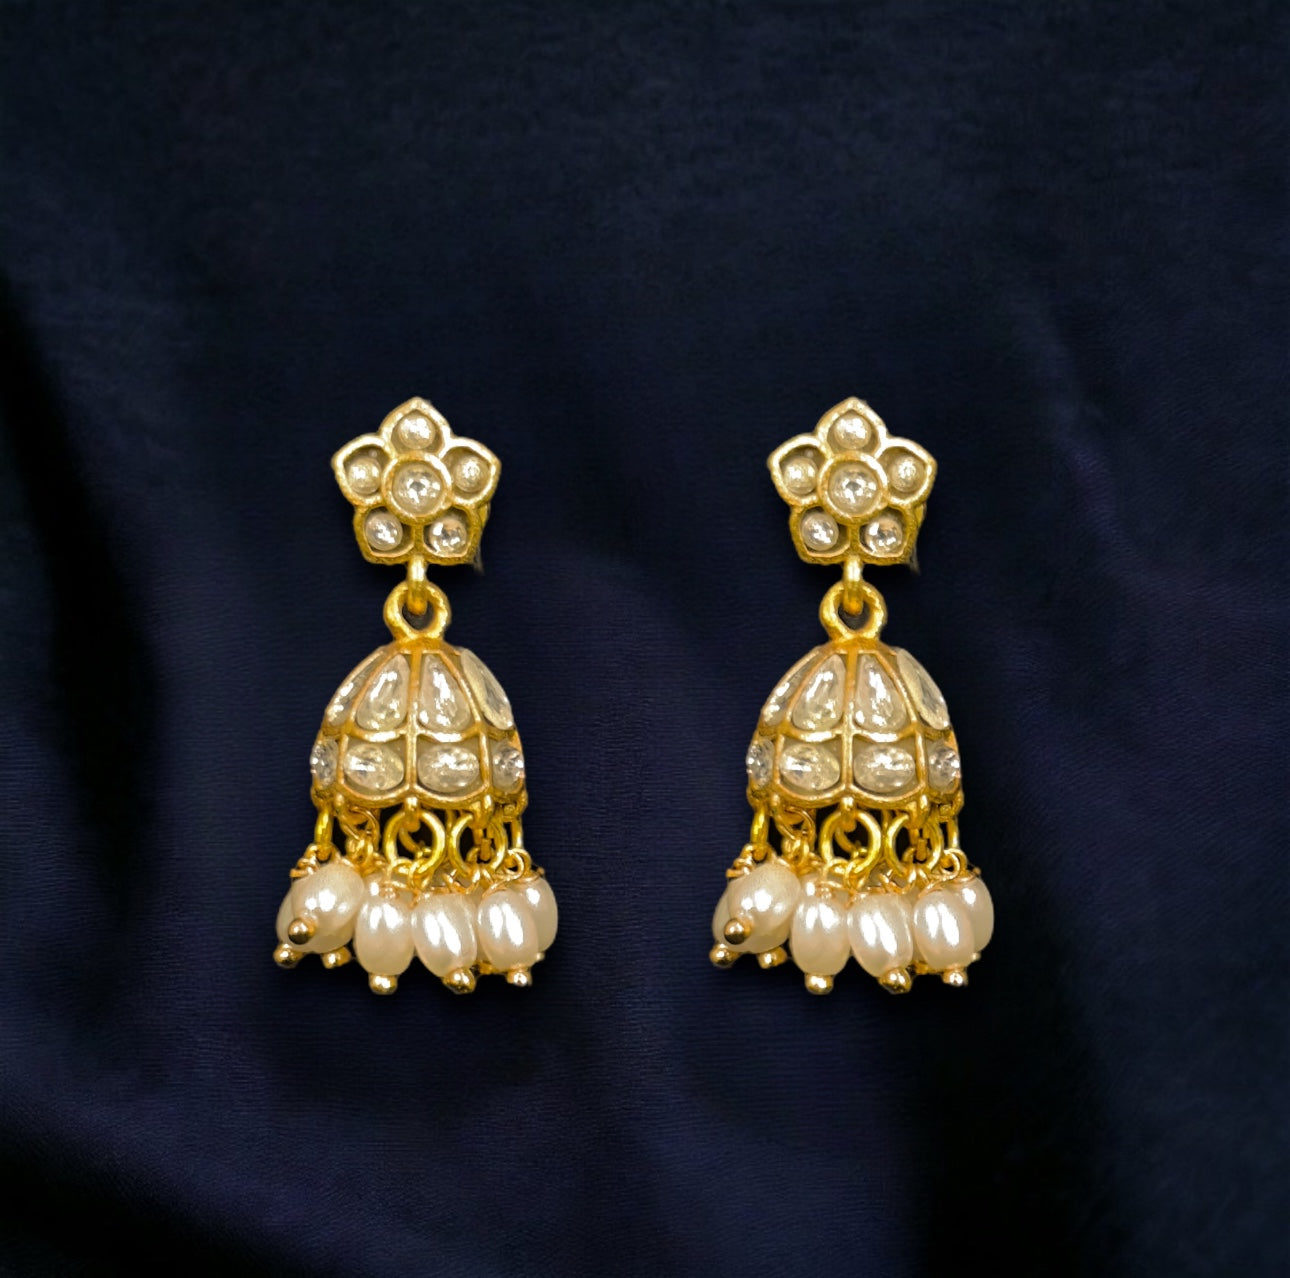 Simple White Stone Jadau Kundan Jhumka Earrings with Pearls